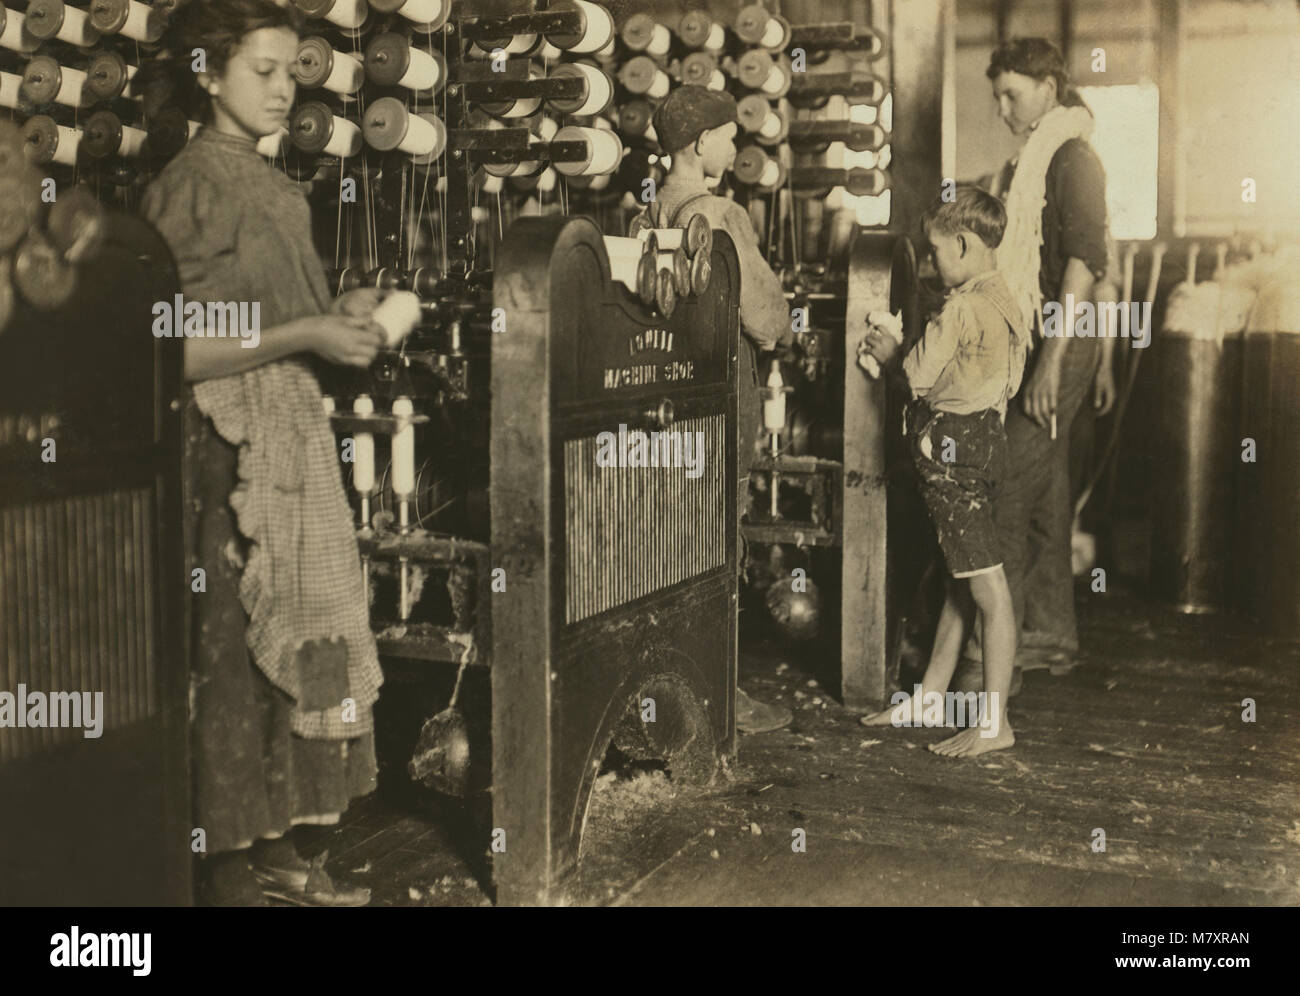 Jeune fille et les garçons qui travaillent dans l'usine de textile, Cherryville, North Carolina, USA, Lewis Hine pour Comité nationale sur le travail des enfants, Novembre 1908 Banque D'Images